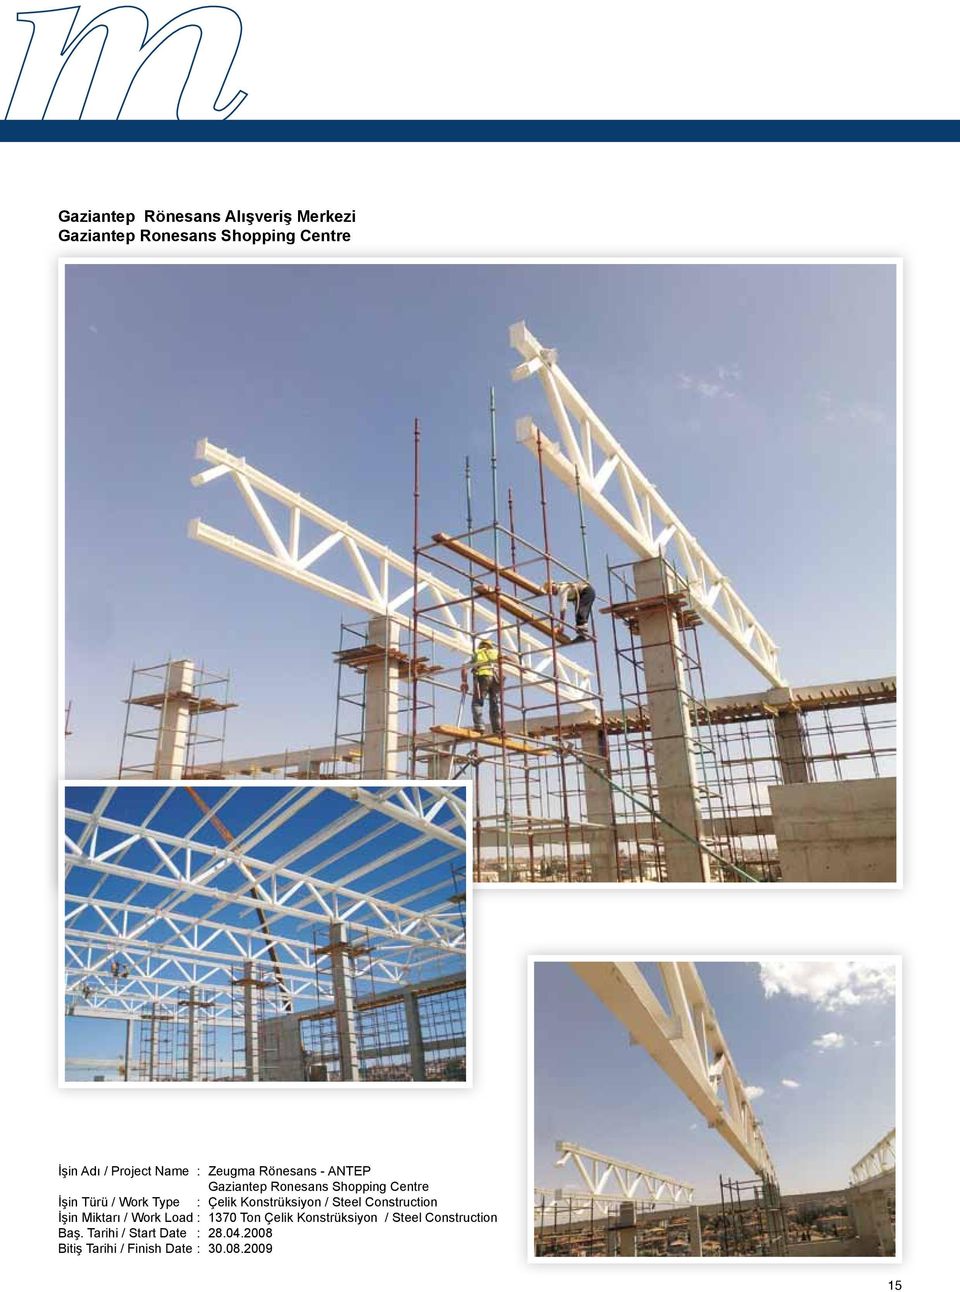 Çelik Konstrüksiyon / Steel Construction İşin Miktarı / Work Load : 1370 Ton Çelik